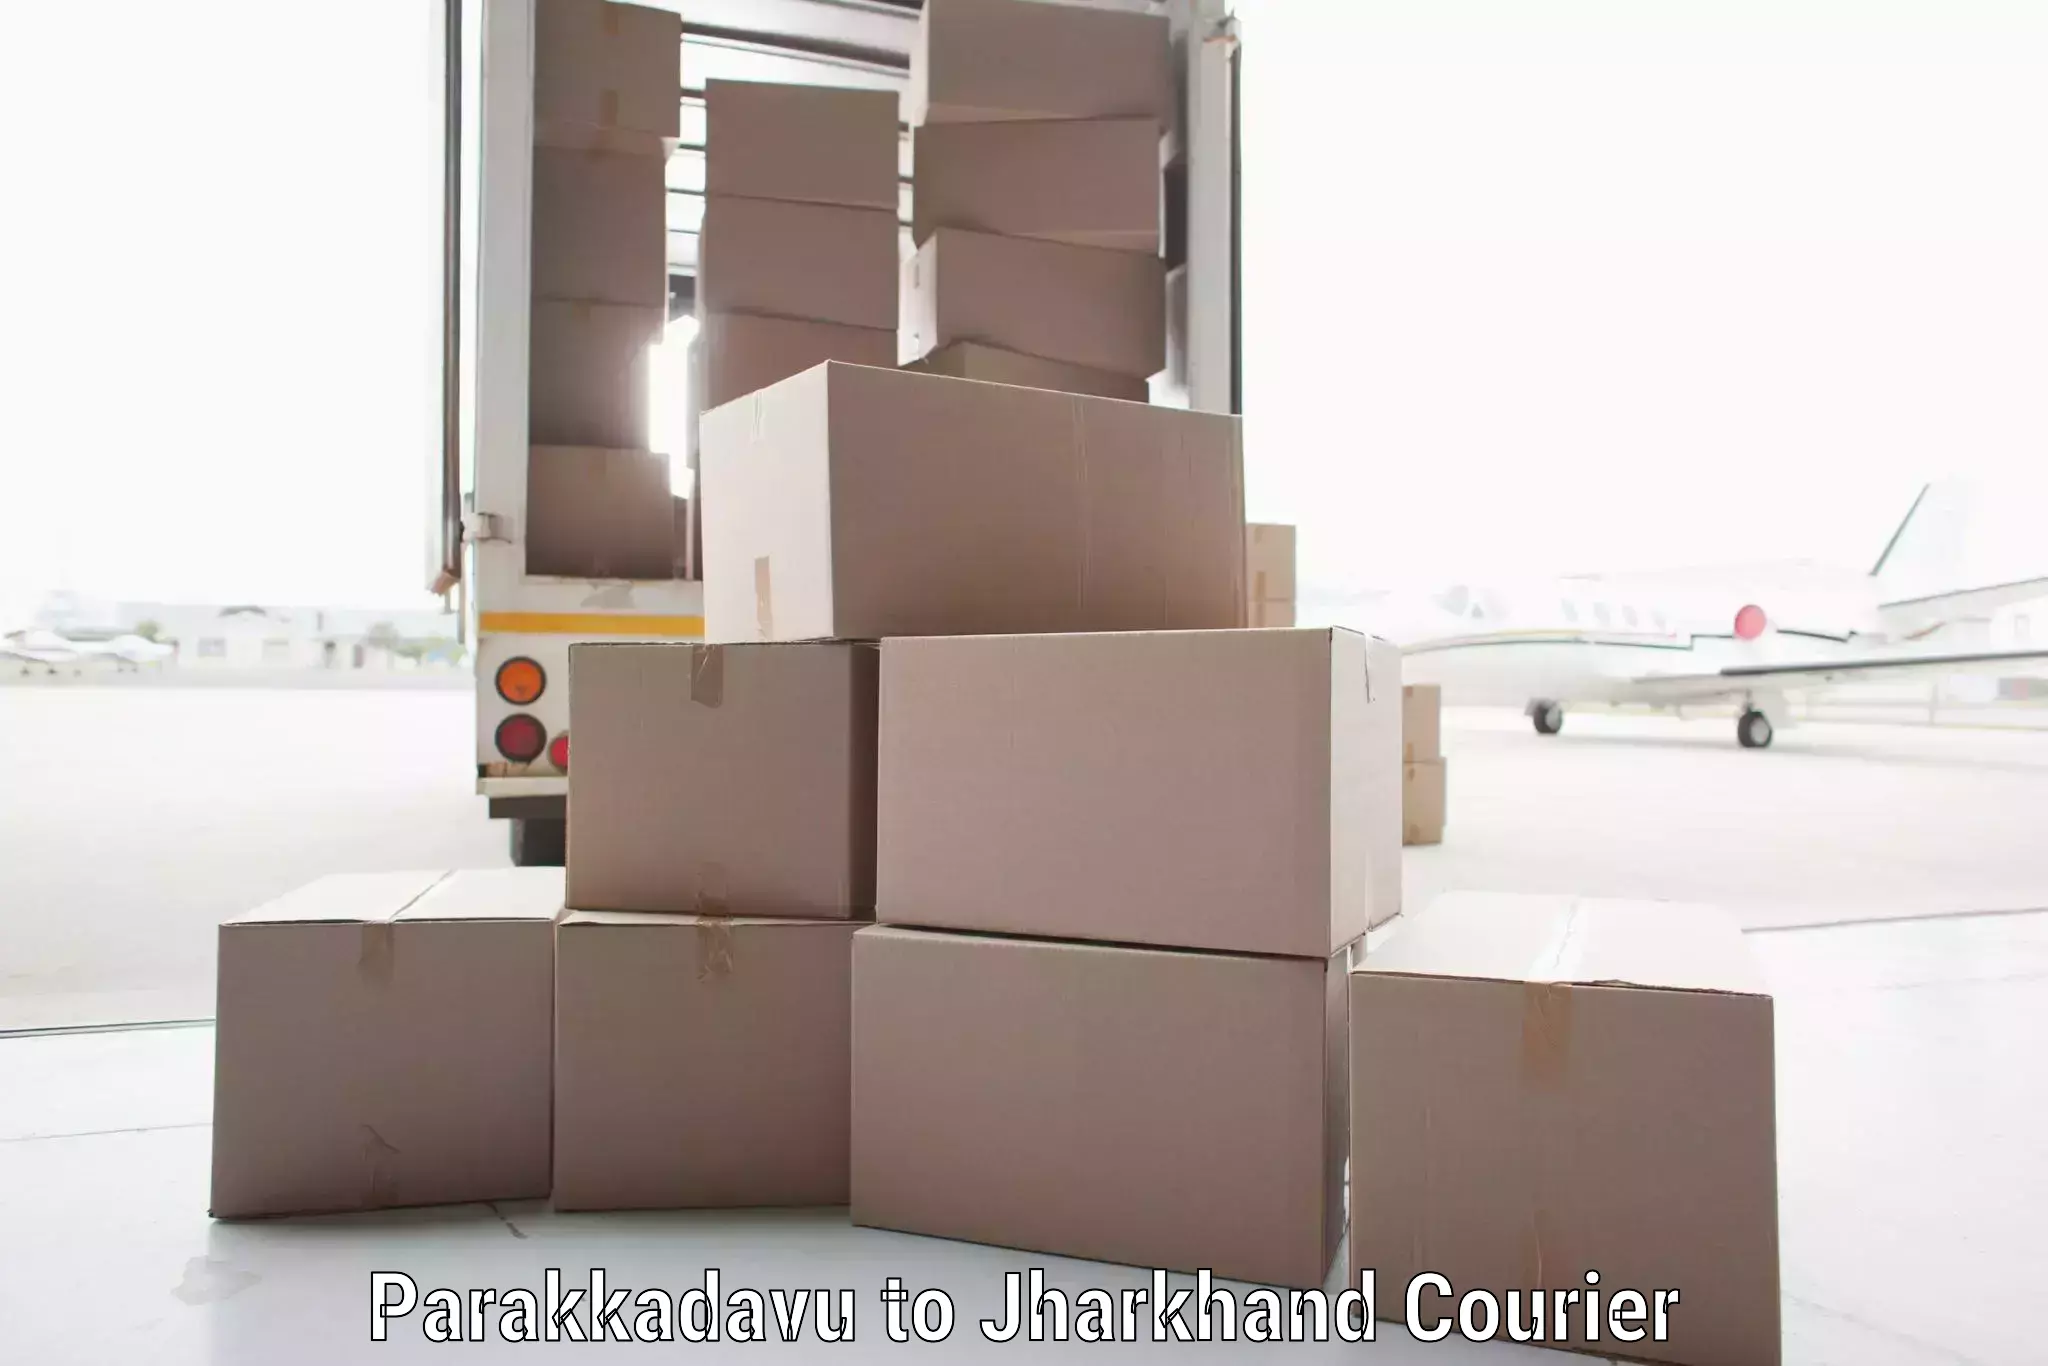 Cargo courier service Parakkadavu to Dumka